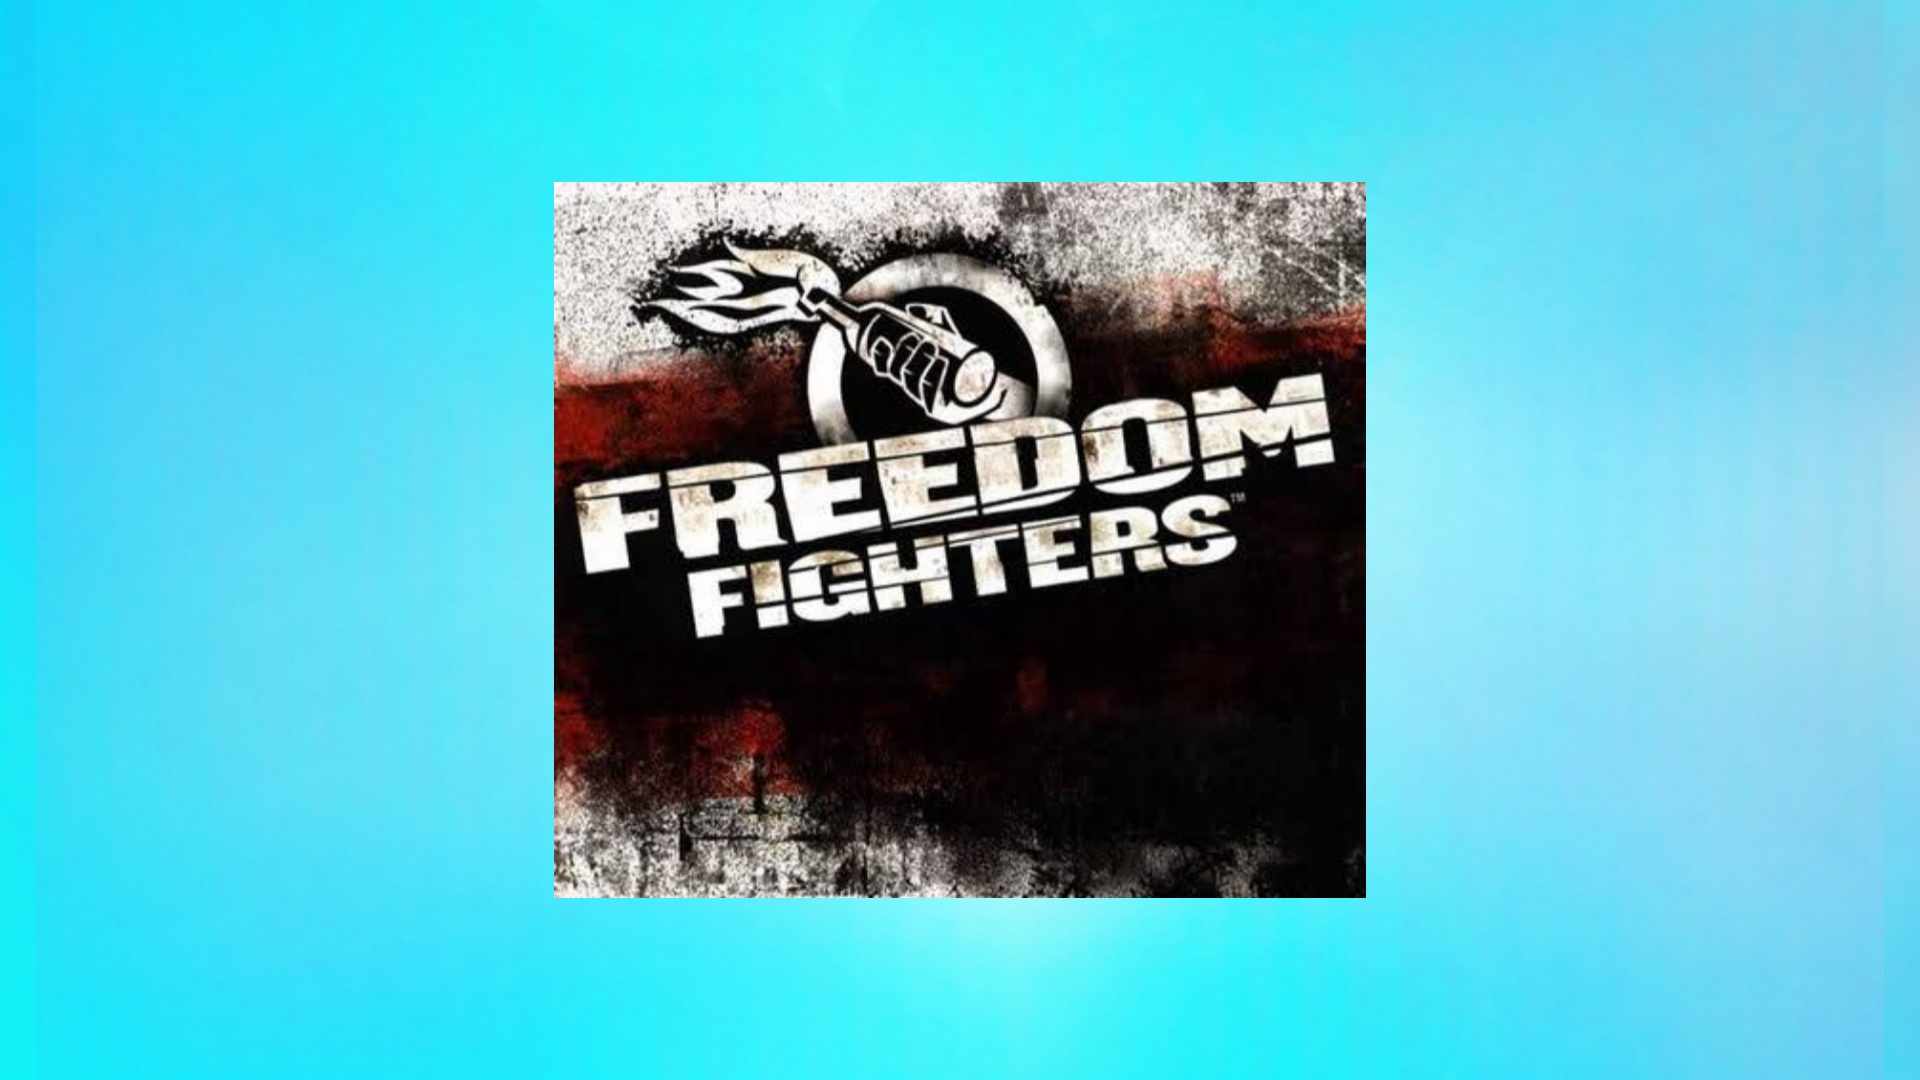 הורד את משחק Freedom Fighters למחשב ולאנדרואיד, הגרסה האחרונה מ- Media Fire 2024